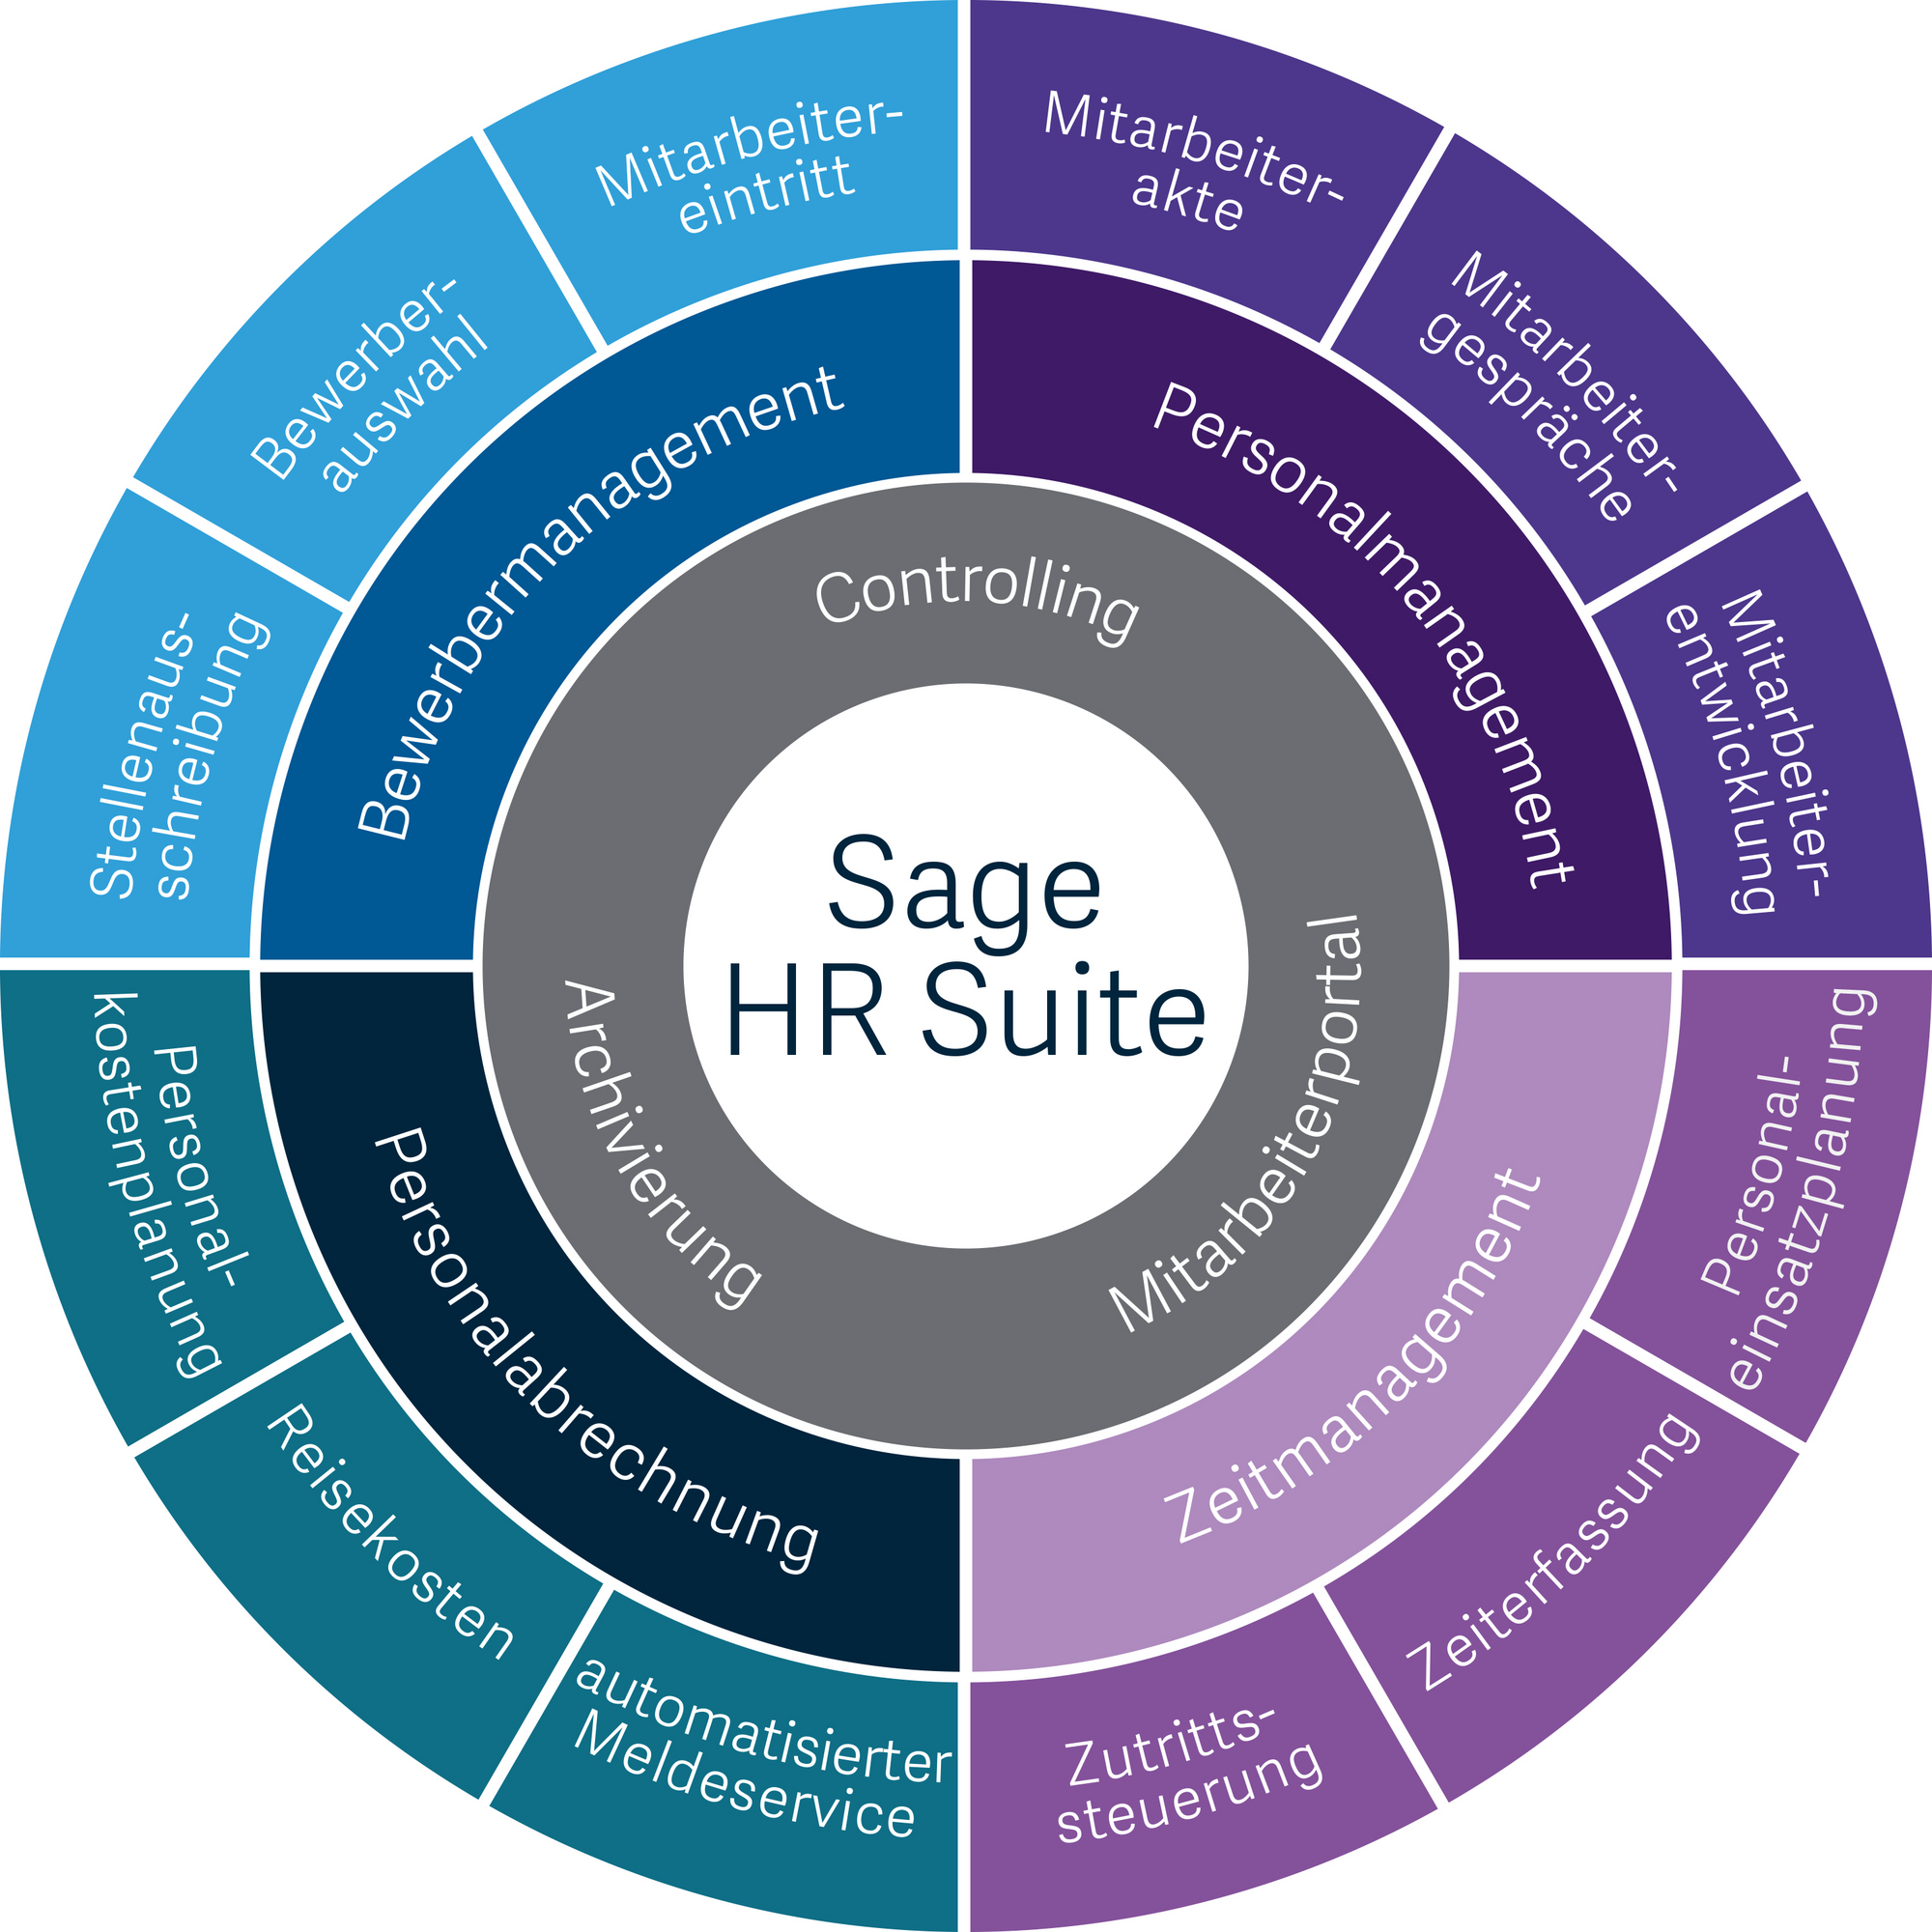 Darstellung der 3 Pakete von Sage HR Suite: Basic, Professional oder Enterprise.